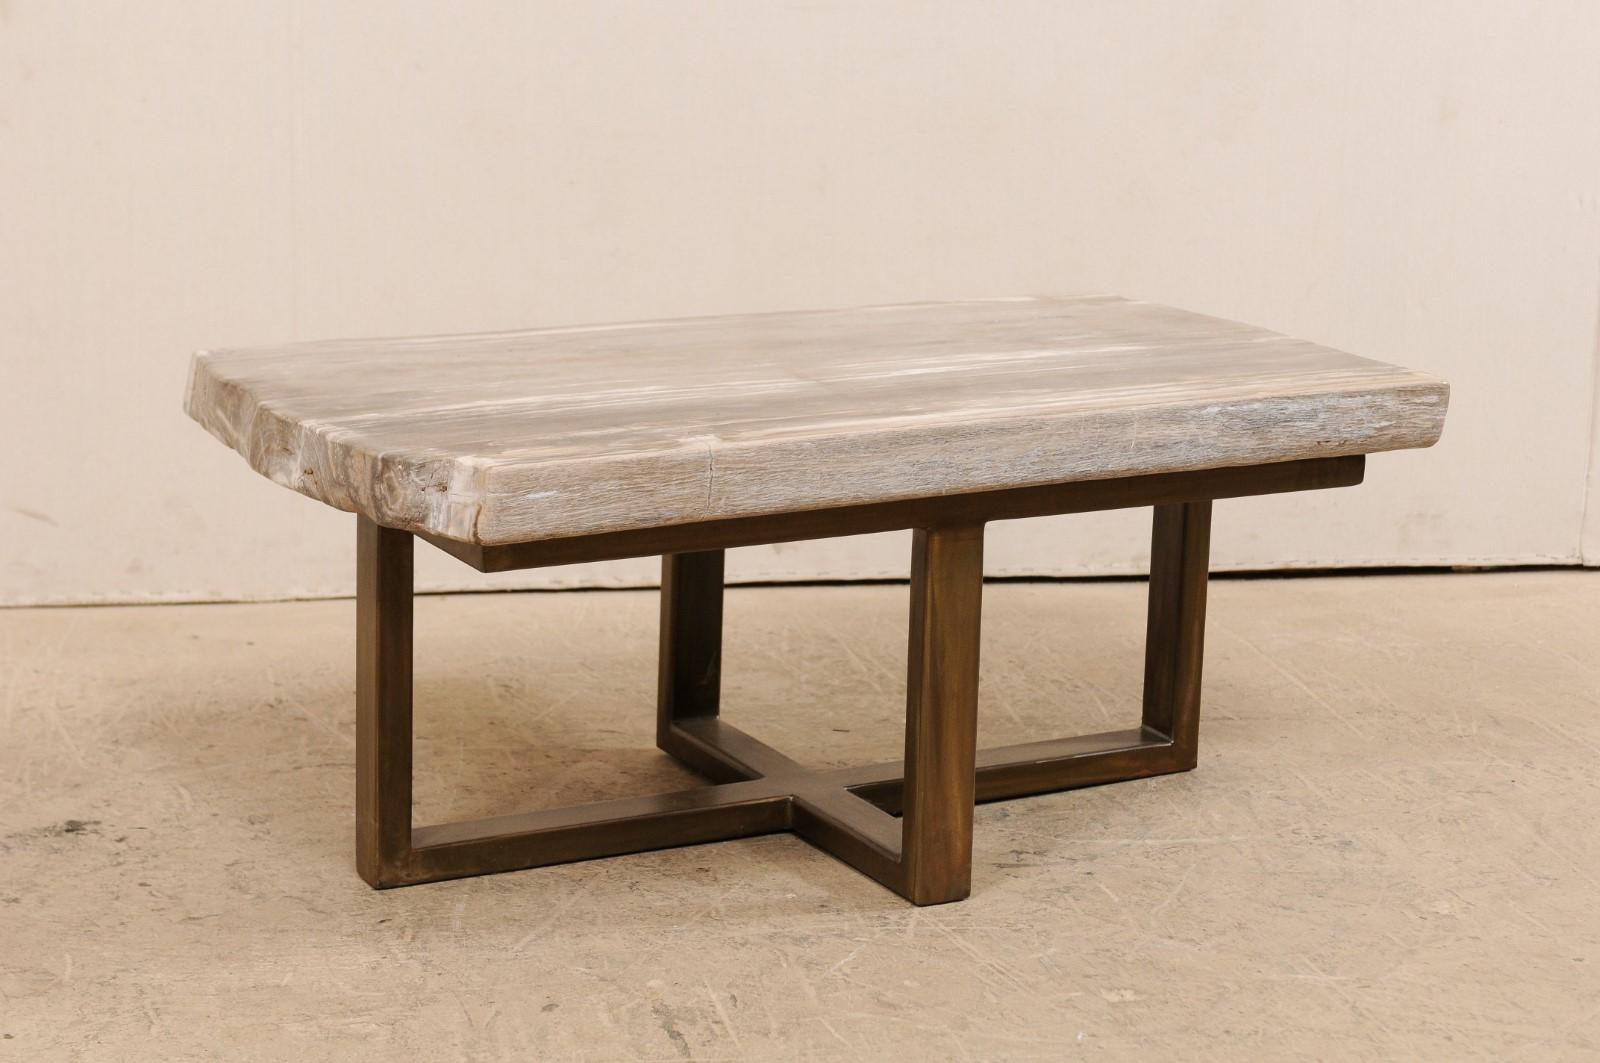 Ein modern gestalteter Couchtisch mit versteinerter Holzplatte (kann auch als Sitzbank verwendet werden). Dieser maßgefertigte Couchtisch wurde aus einer einzelnen dicken Platte aus glatt poliertem versteinertem Holz gefertigt und hat eine